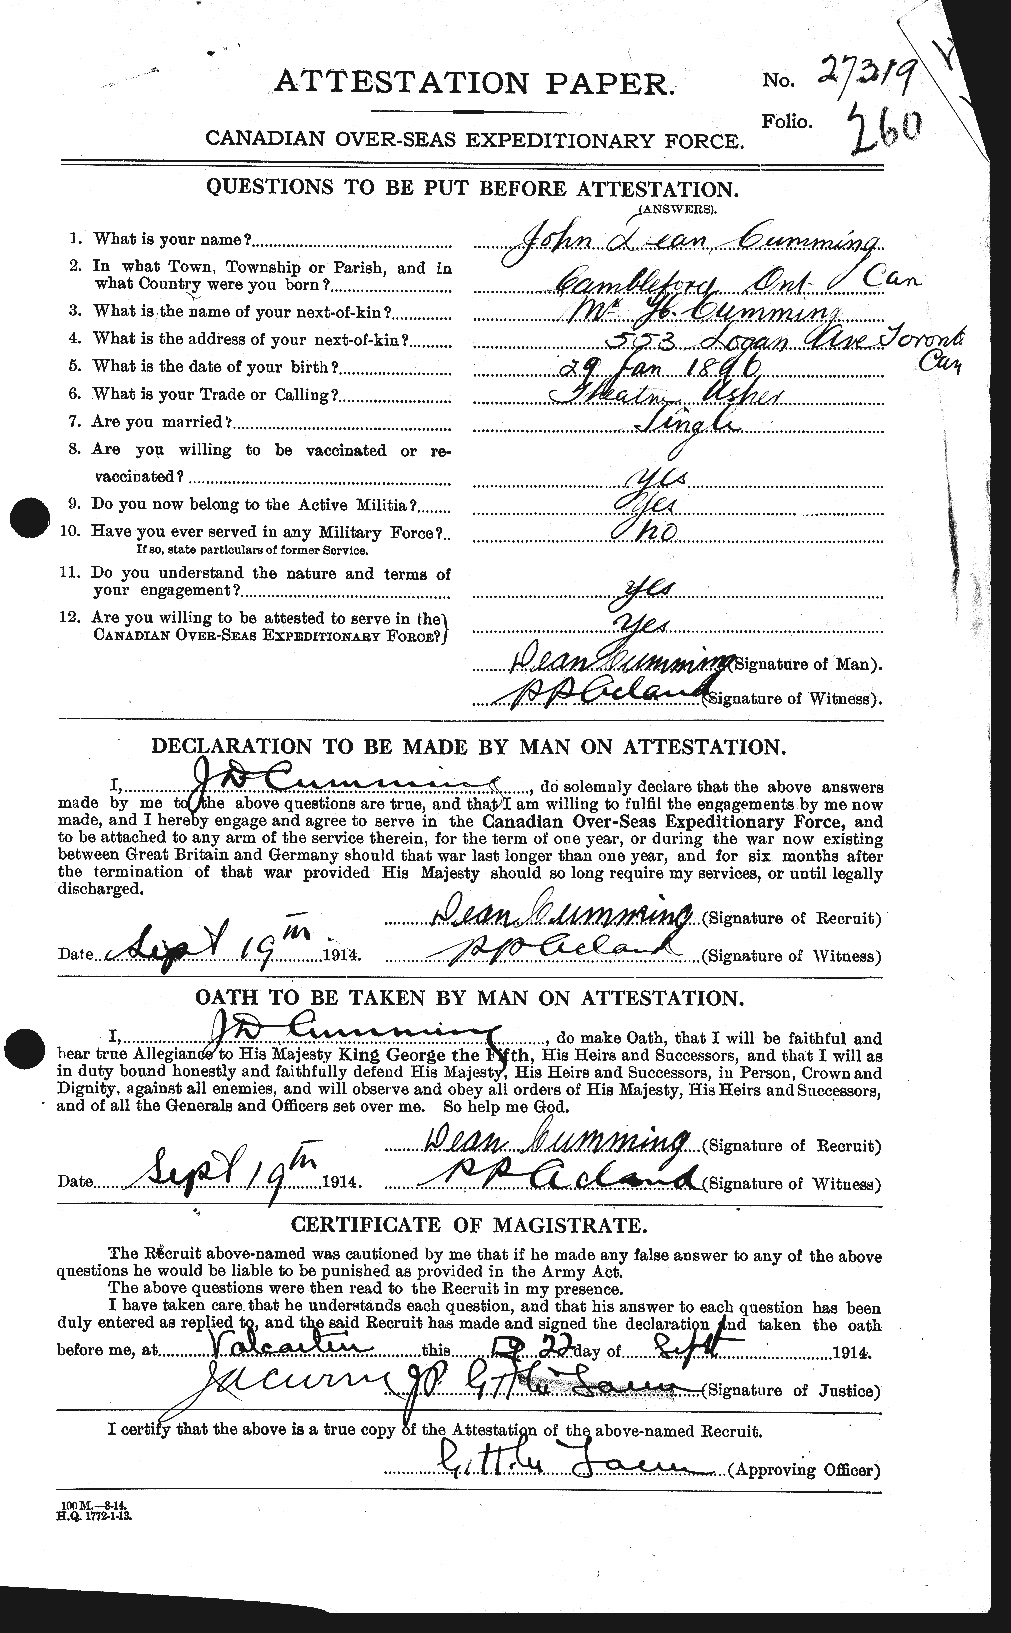 Dossiers du Personnel de la Première Guerre mondiale - CEC 071075a